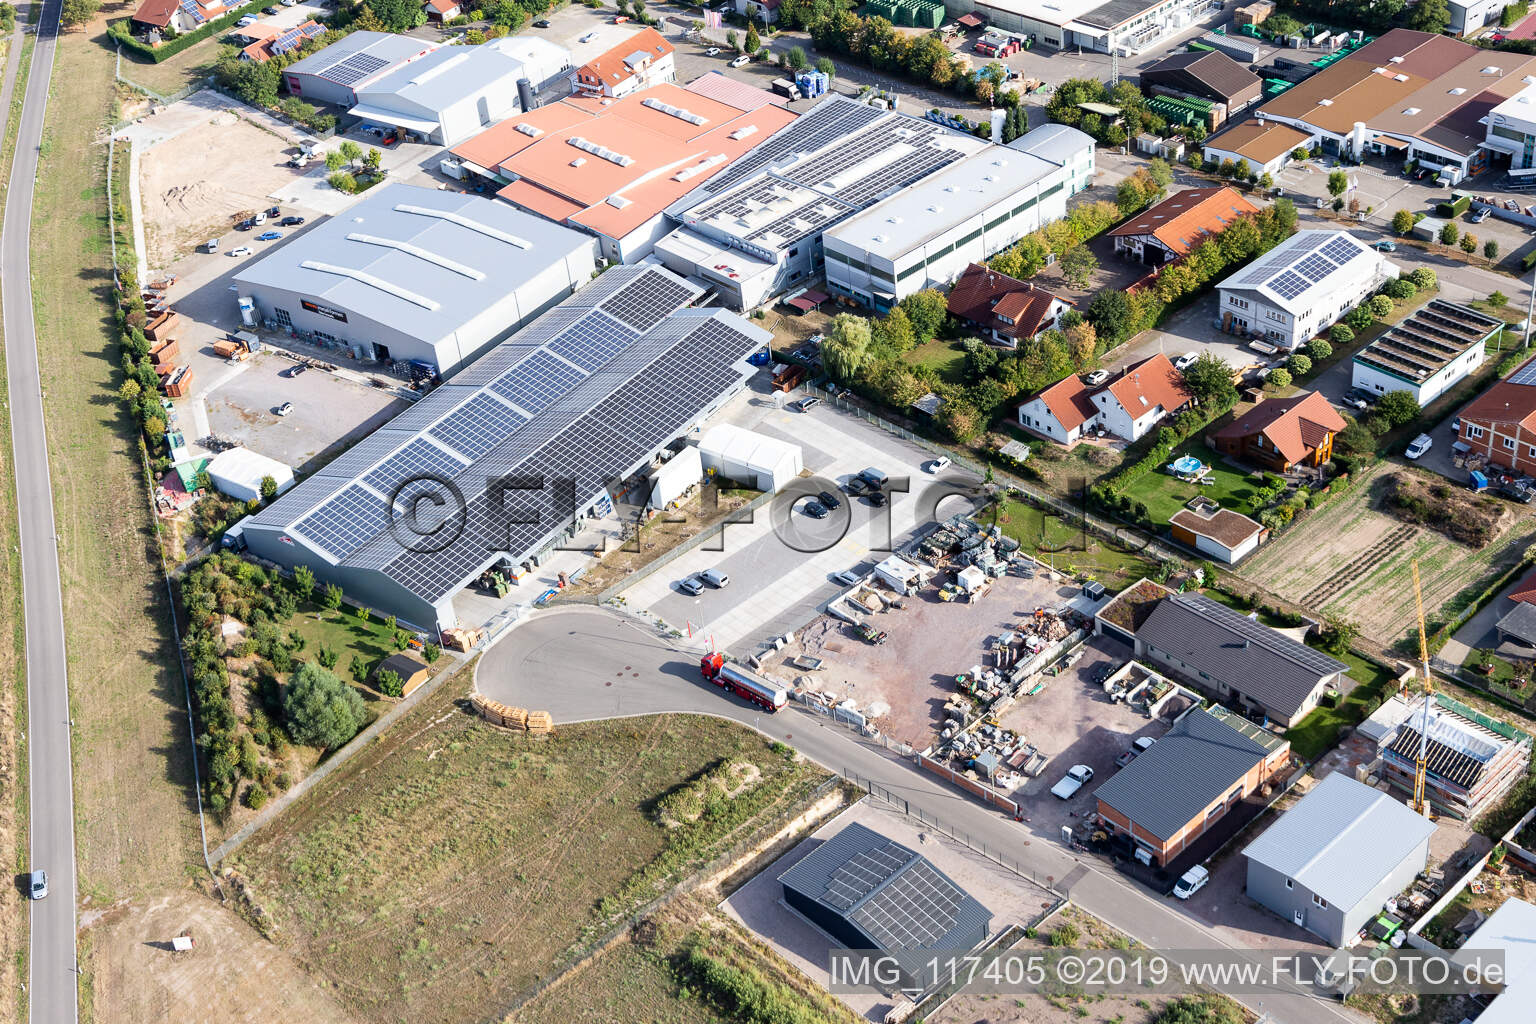 Zone commerciale Im Gereut, HGGS LaserCUT GmbH & Co. KG à Hatzenbühl dans le département Rhénanie-Palatinat, Allemagne vue du ciel